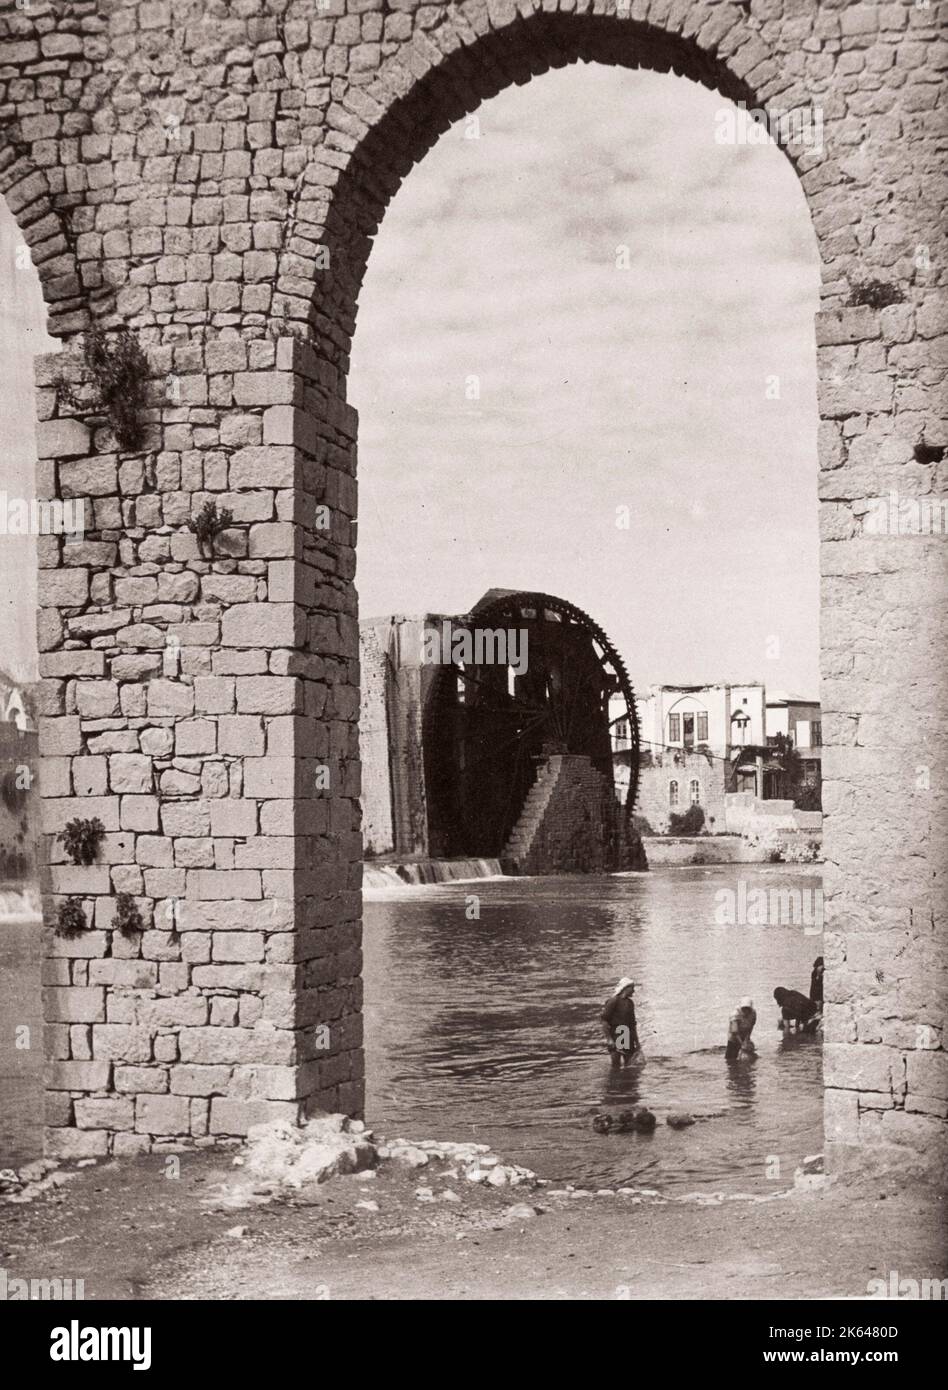 1943 Syrie - Hama sur la rivière Orontes Photographie d'un officier de recrutement de l'armée britannique stationné en Afrique de l'est et au Moyen-Orient pendant la Seconde Guerre mondiale Banque D'Images